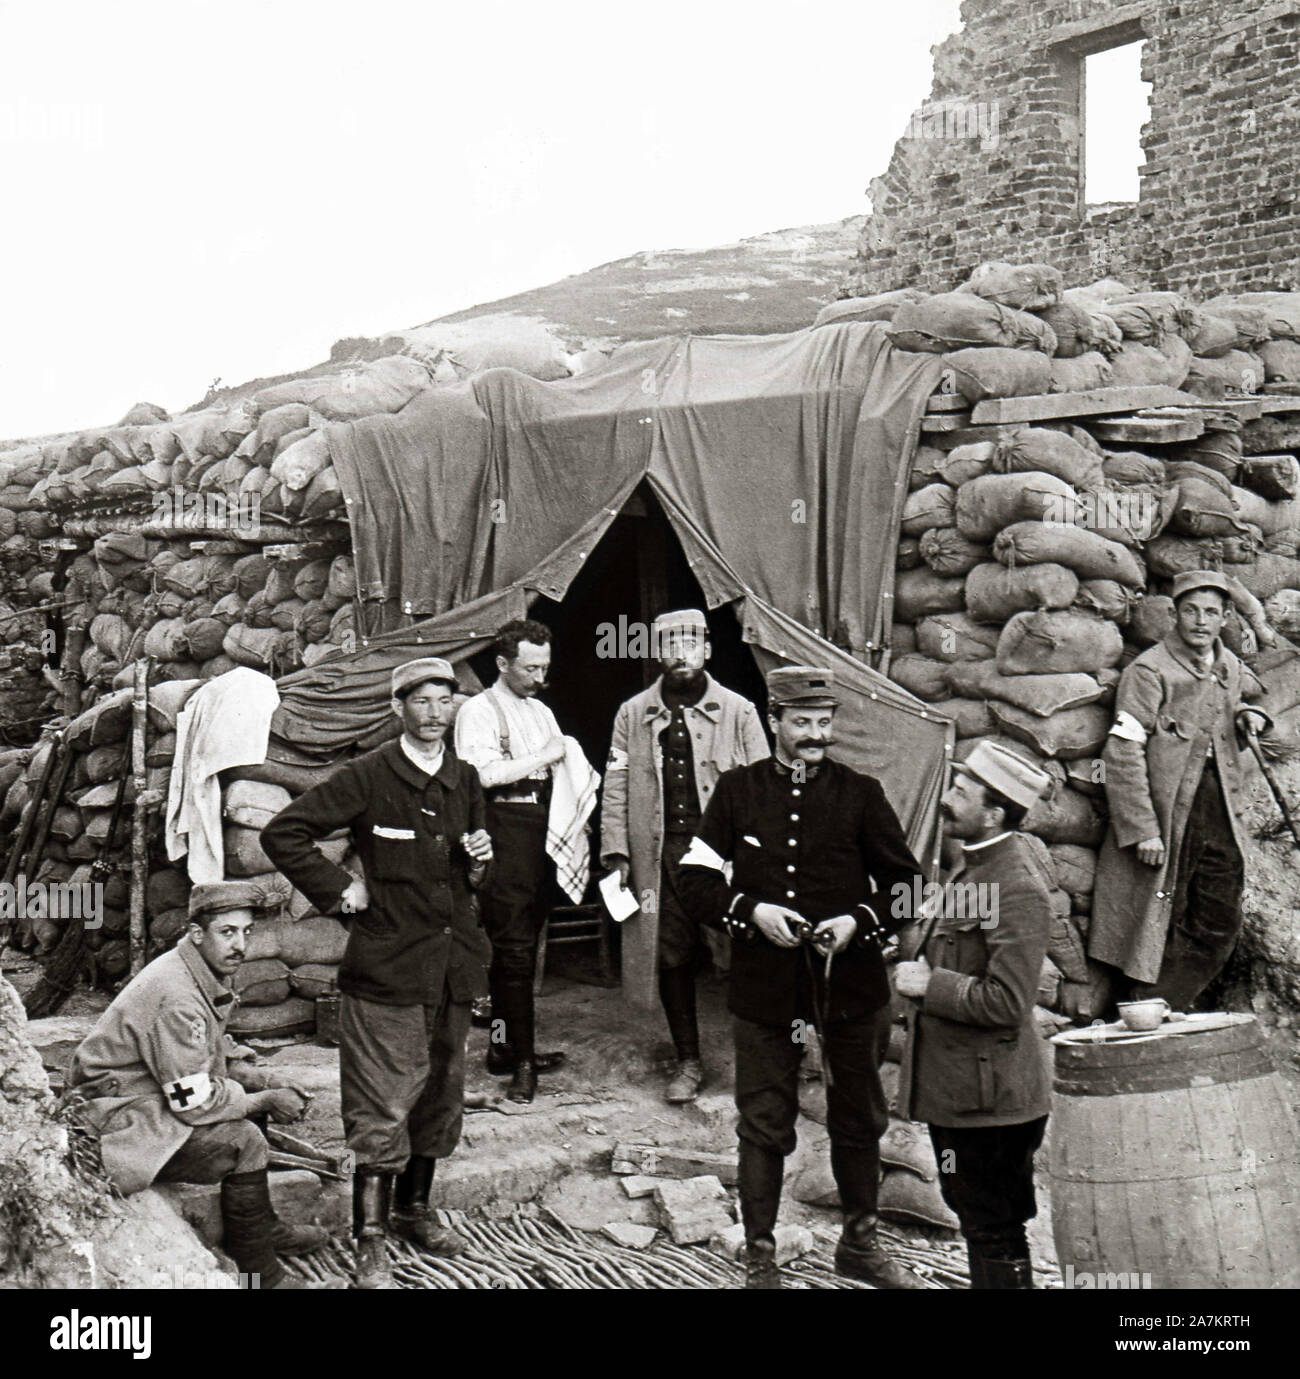 Premiere Guerre Mondiale, poste de secours un Ablain Saint Nazaire dans le Pas-de-Calais. Photographie, 1914-1918, París. Foto de stock